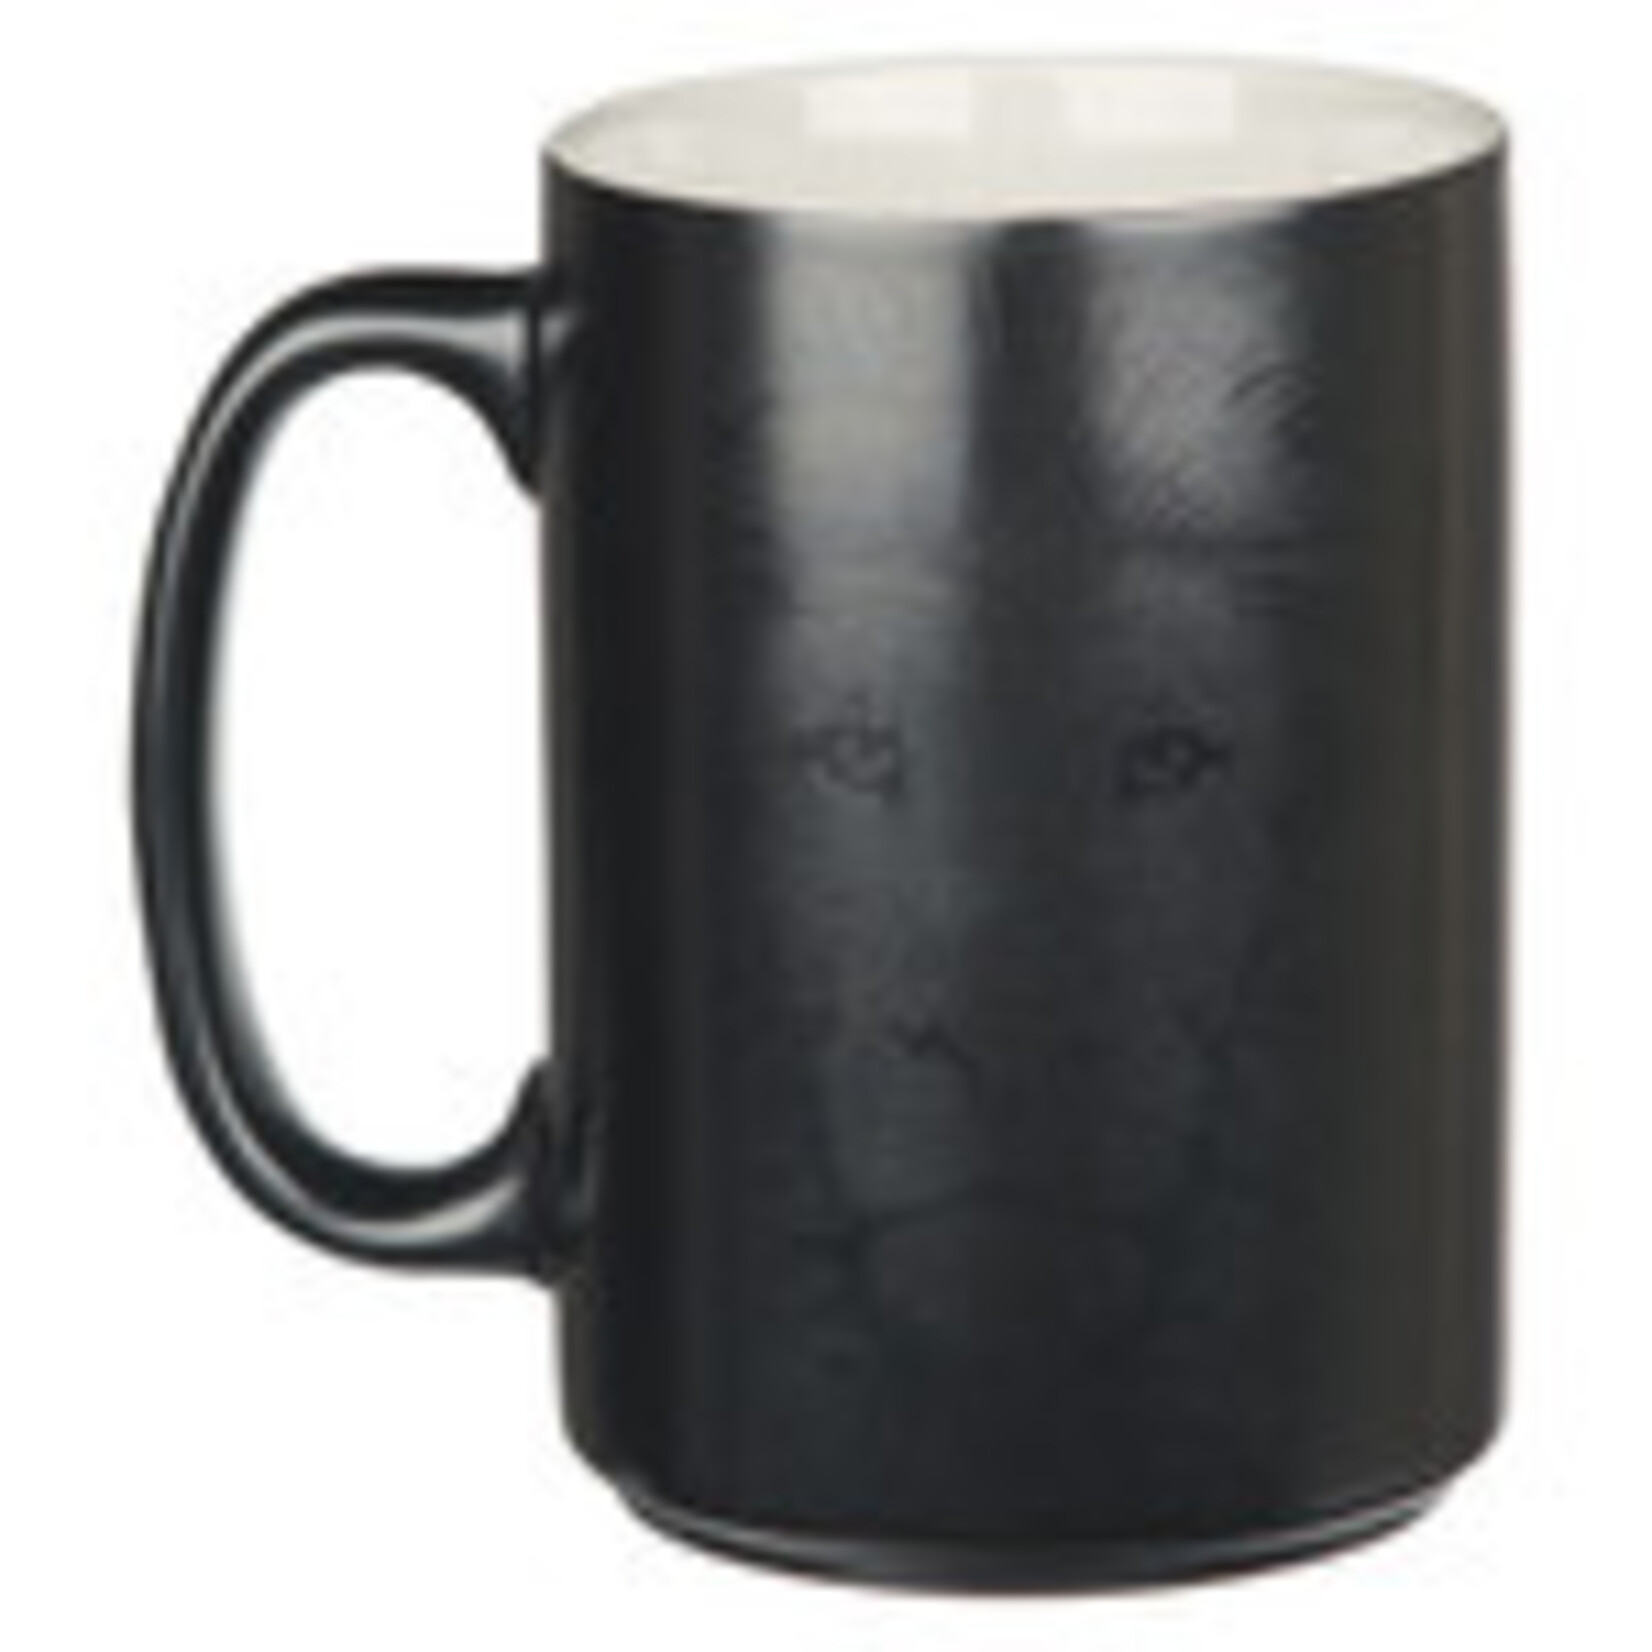 Strong and Courageous Coffee Mug